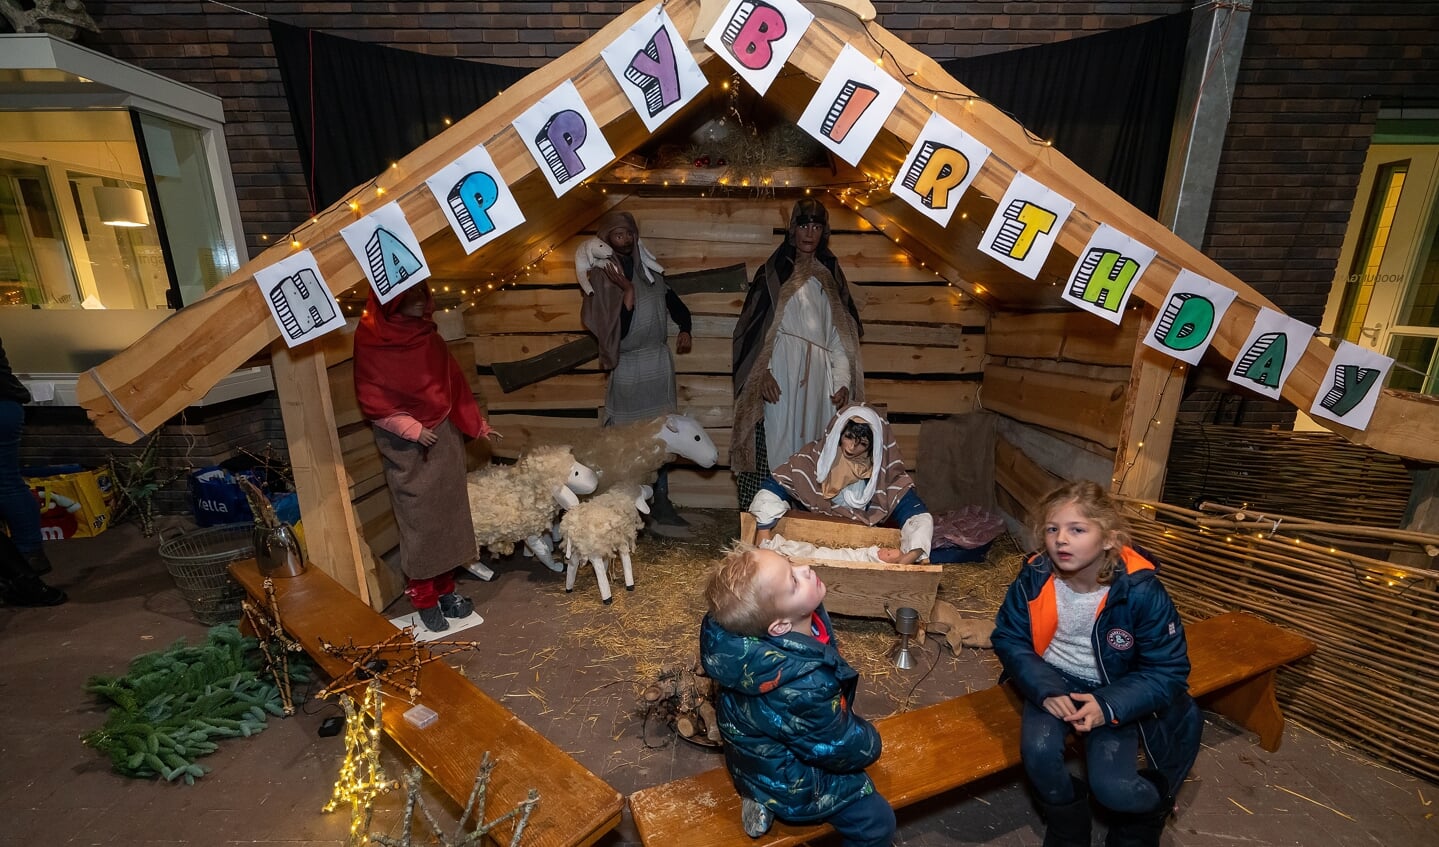 Kerstfair in Burcht van Haeften